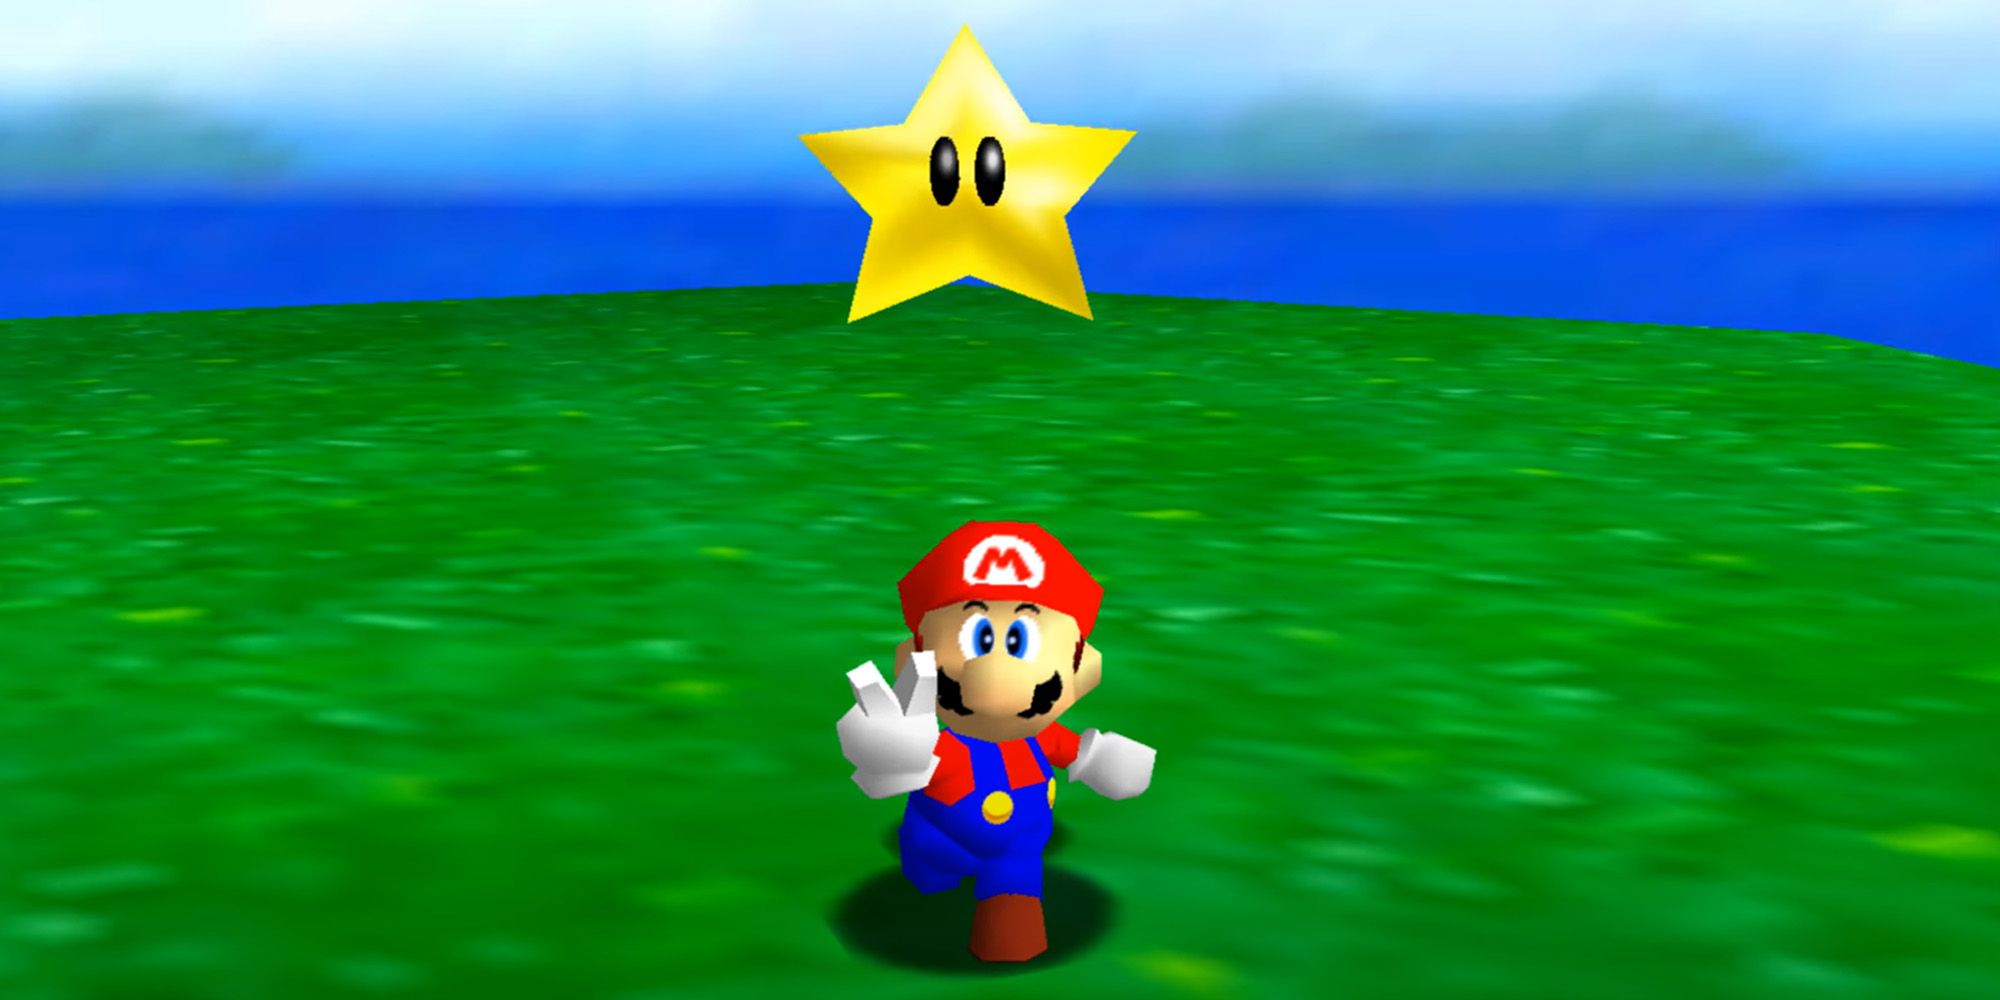 Mario collecting a Power Star in Super Mario 64